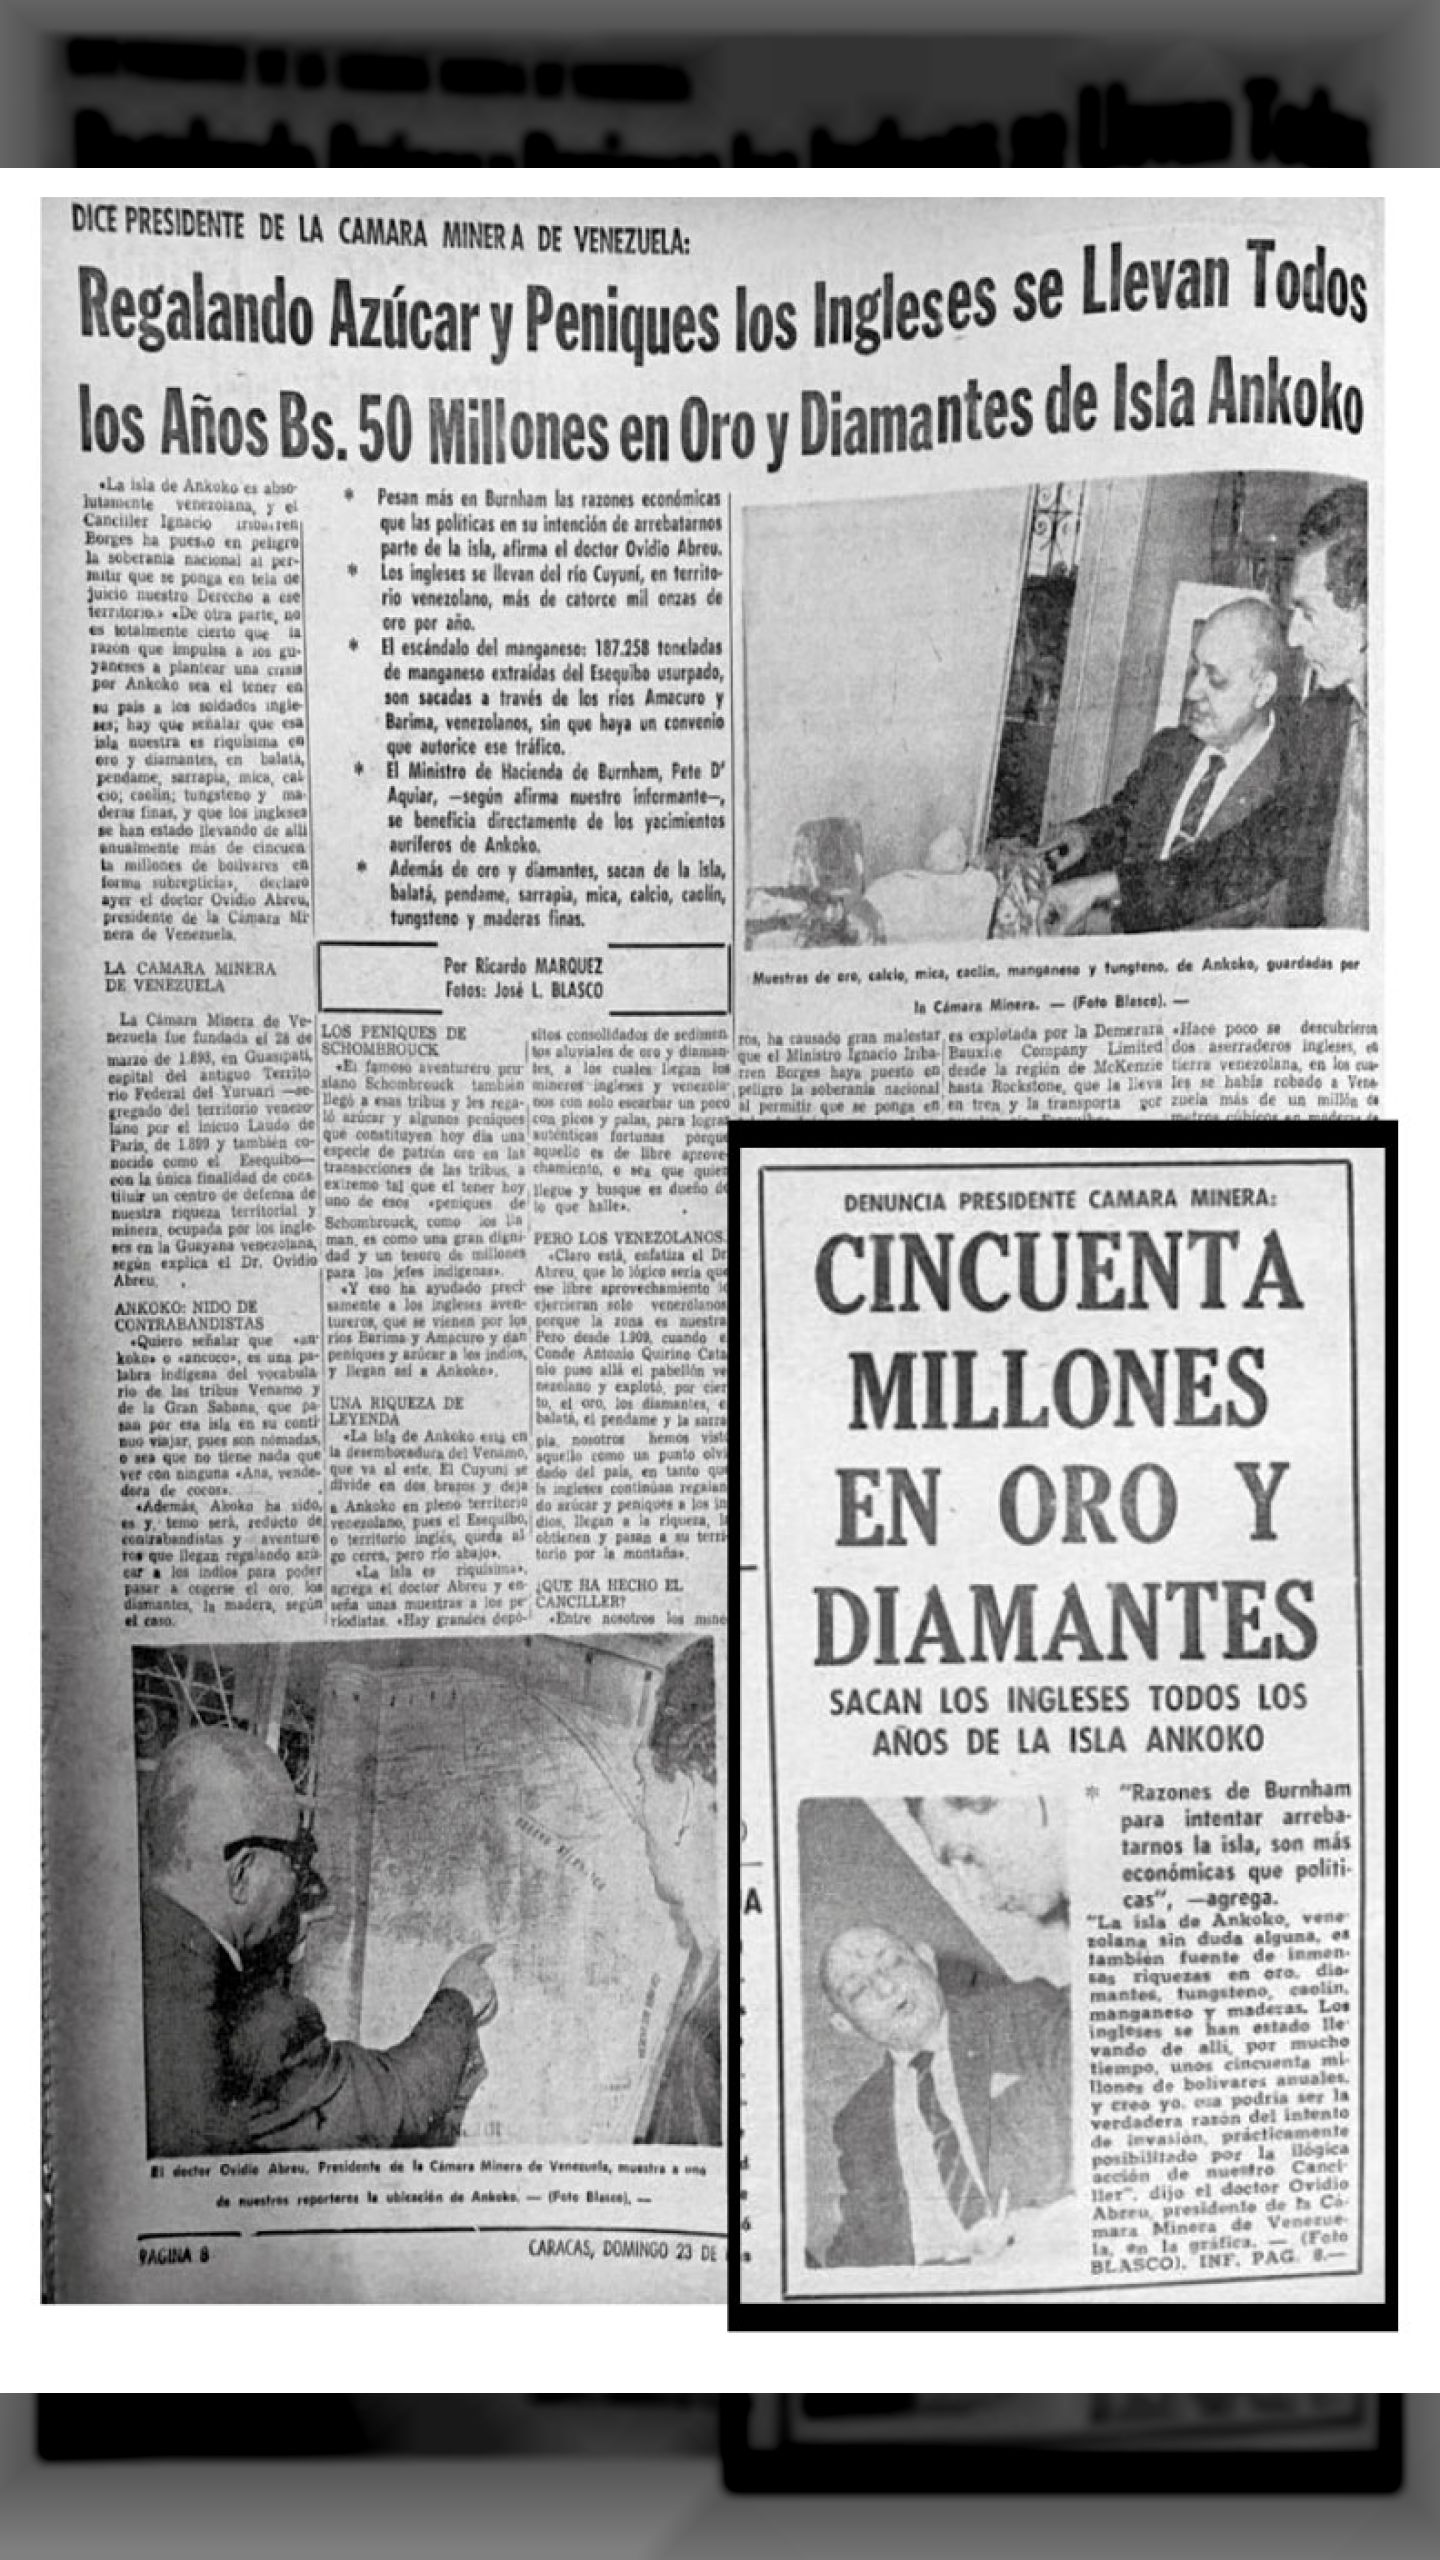 CINCUENTA MILLONES EN ORO Y DIAMANTES SAQUERON LOS INGLESES TODOS LOS AÑOS DE LA ISLA ANAKOKO (Últimas Noticias, 23 de octubre de 1966)